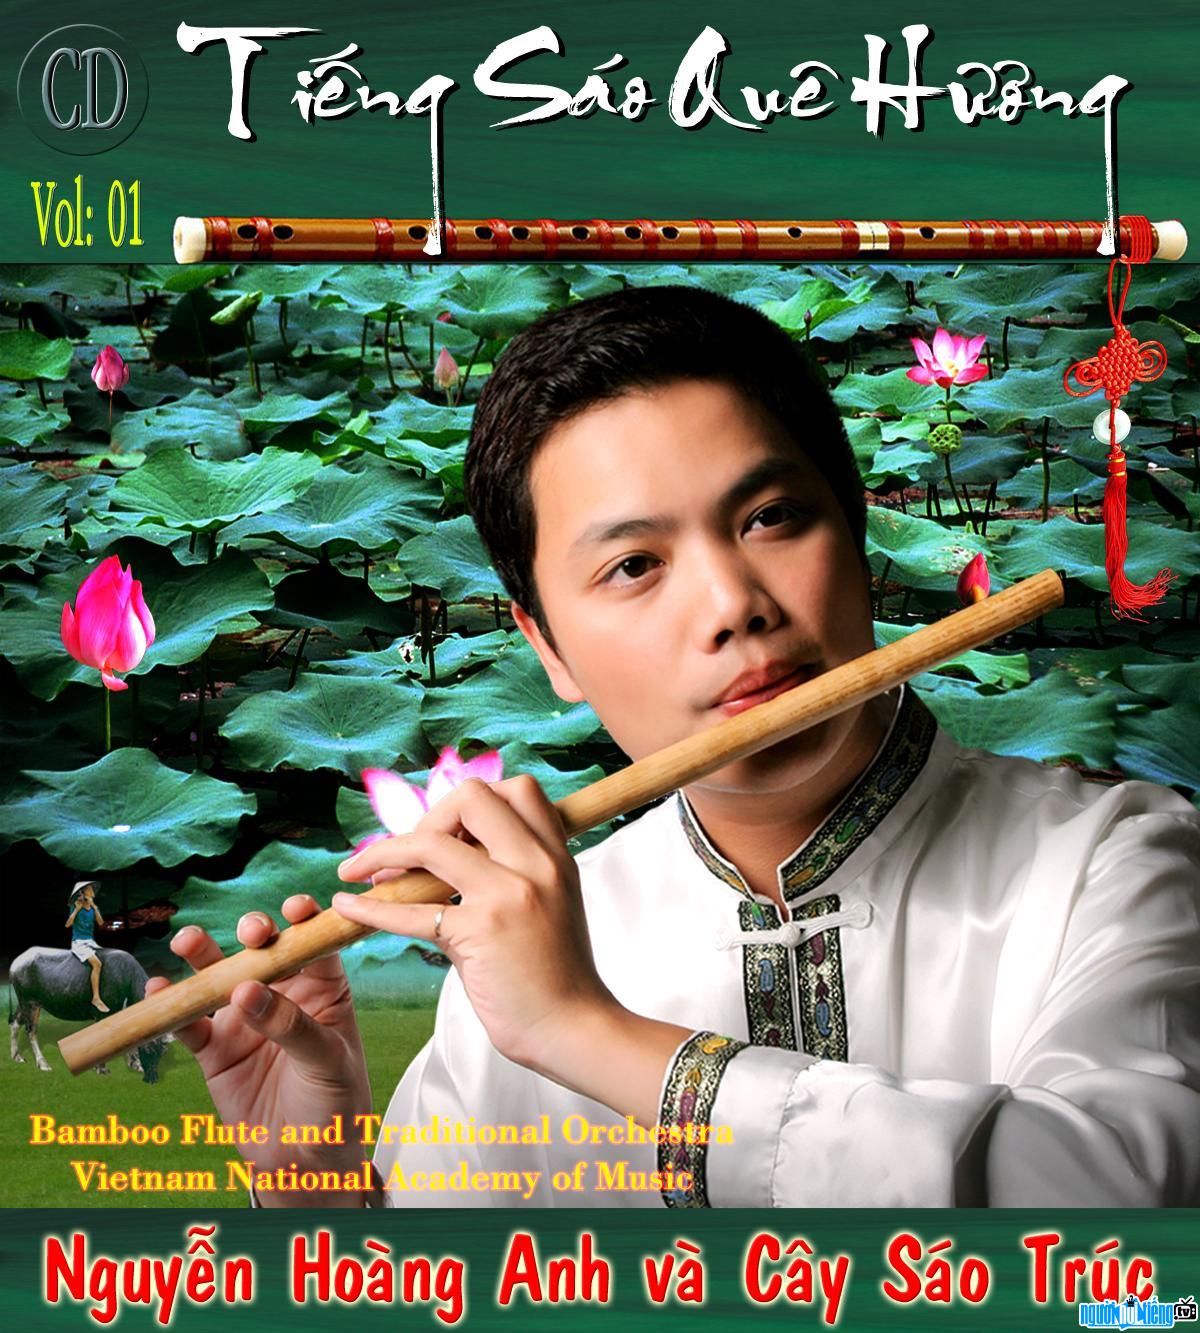 Nguyễn Hoàng Anh với CD "Tiếng sáo quê hương"